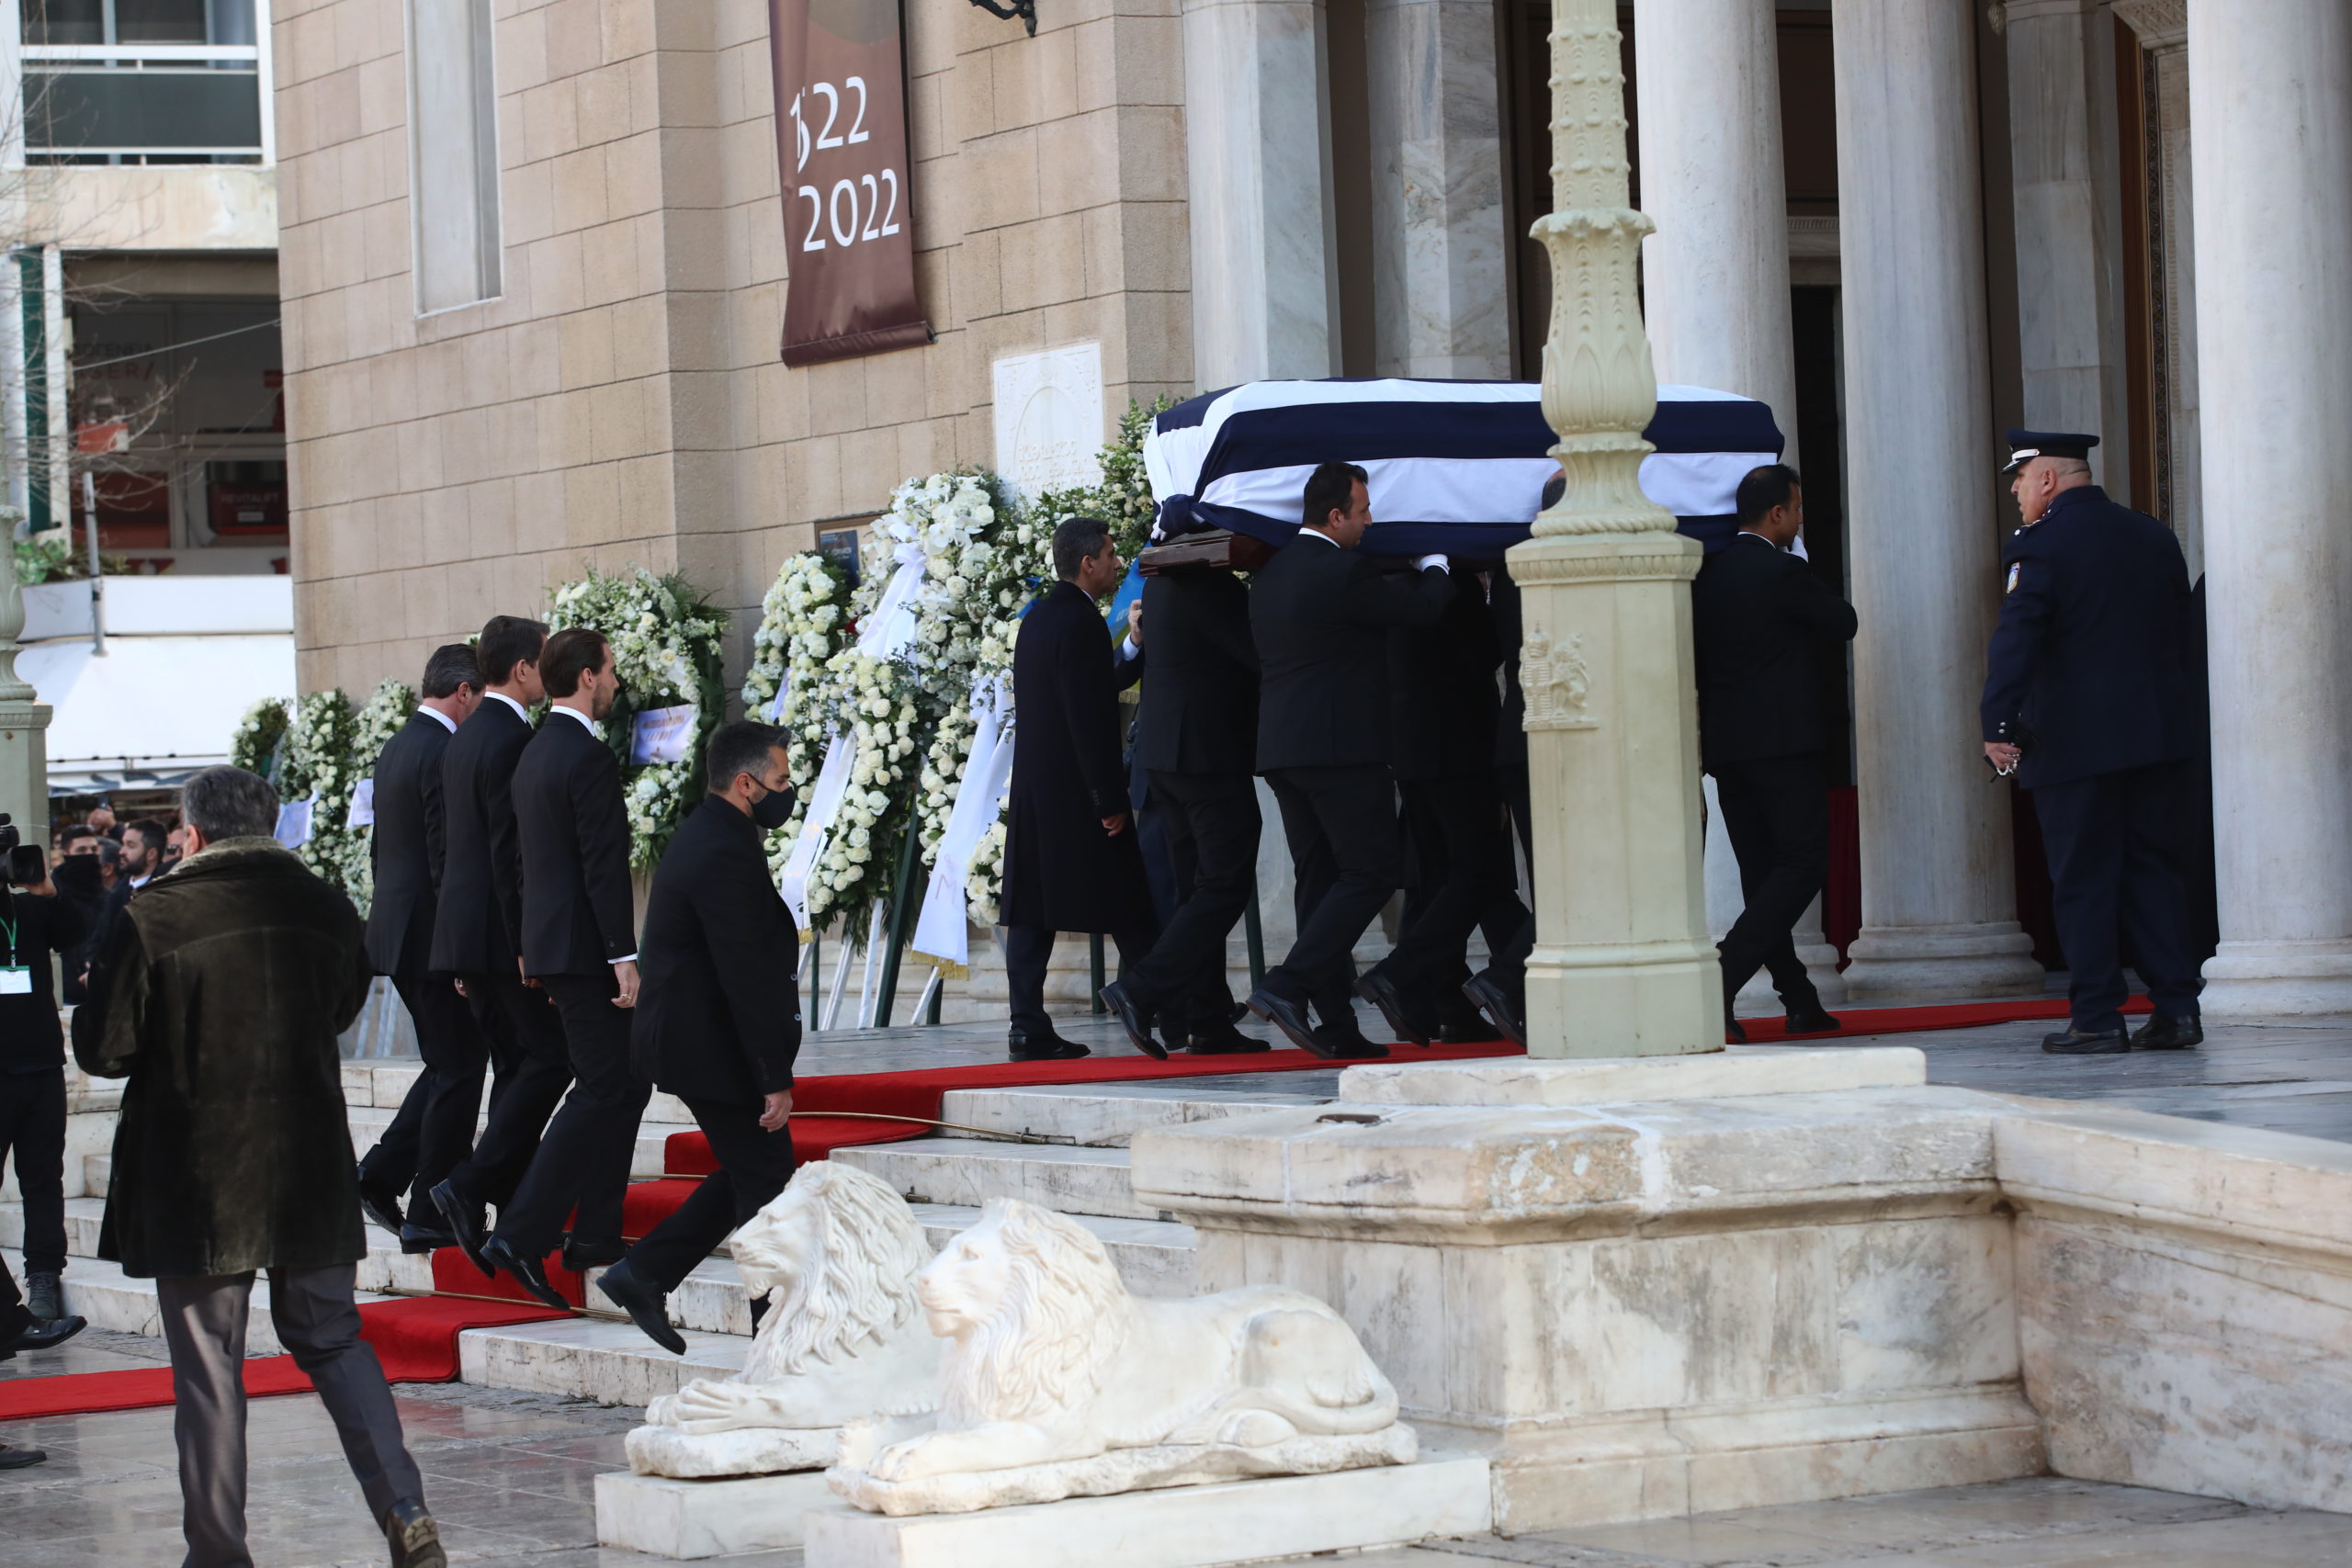 Κηδεία τέως βασιλιά: Στη Μητρόπολη οι υψηλοί προσκεκλημένοι